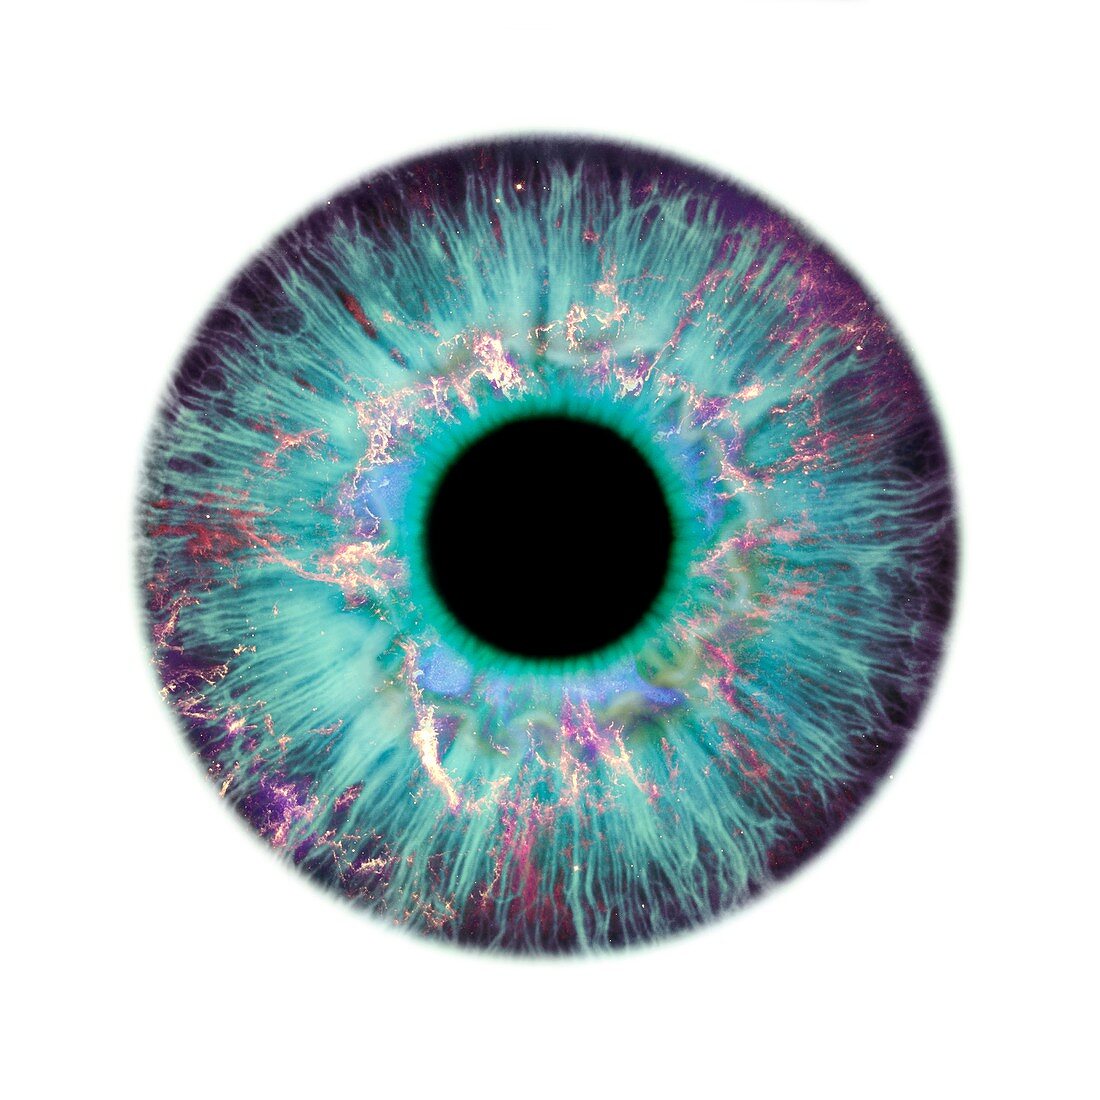 Human eye and nebula,composite image